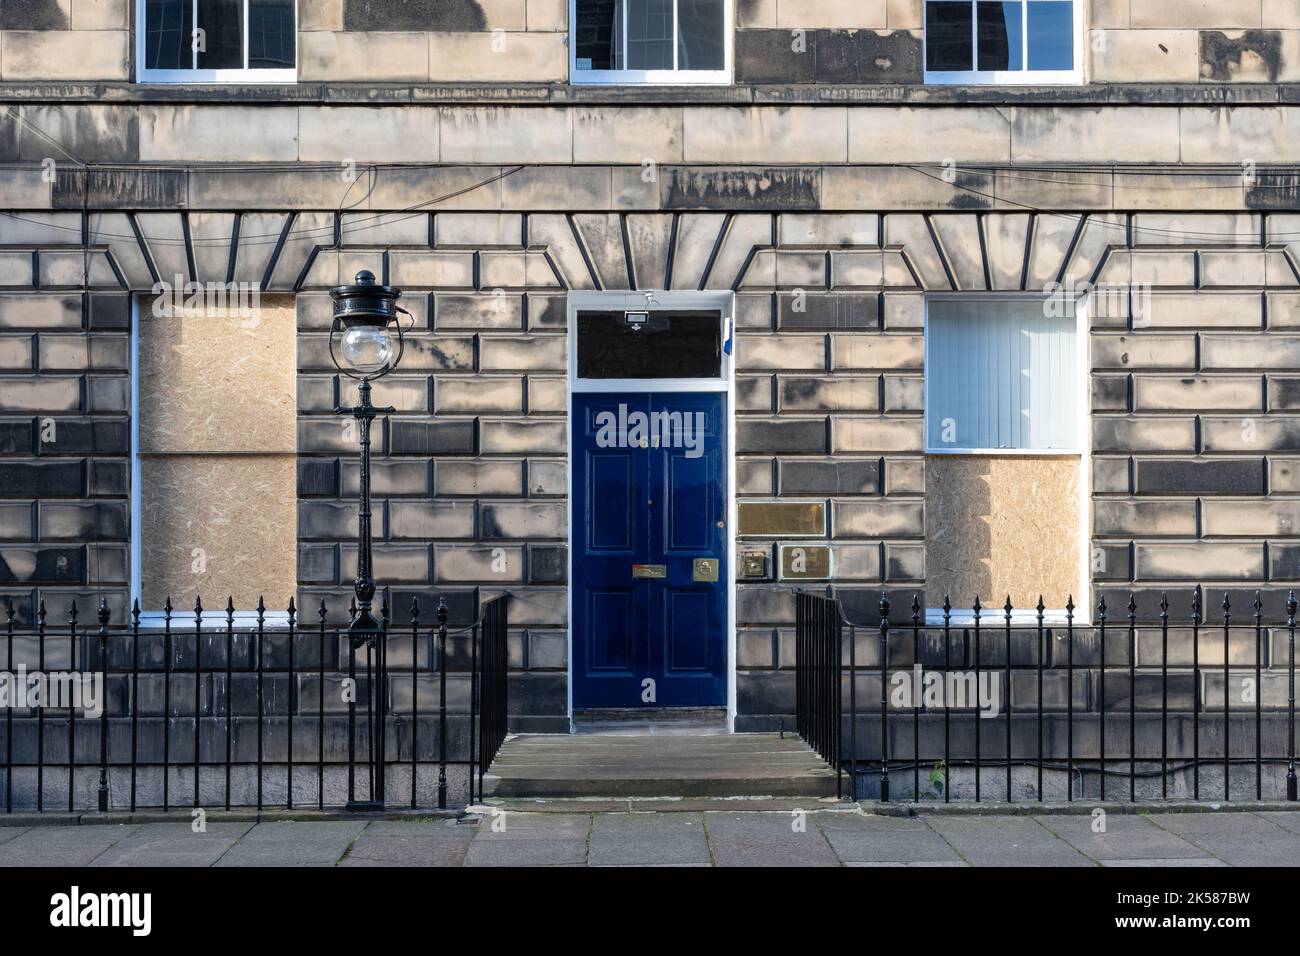 Le quartier général du Parti conservateur écossais après avoir été ciblé par des militants qui ont frappé les fenêtres et écrit « du sang sur vos mains » à la porte - Edimbourg Banque D'Images